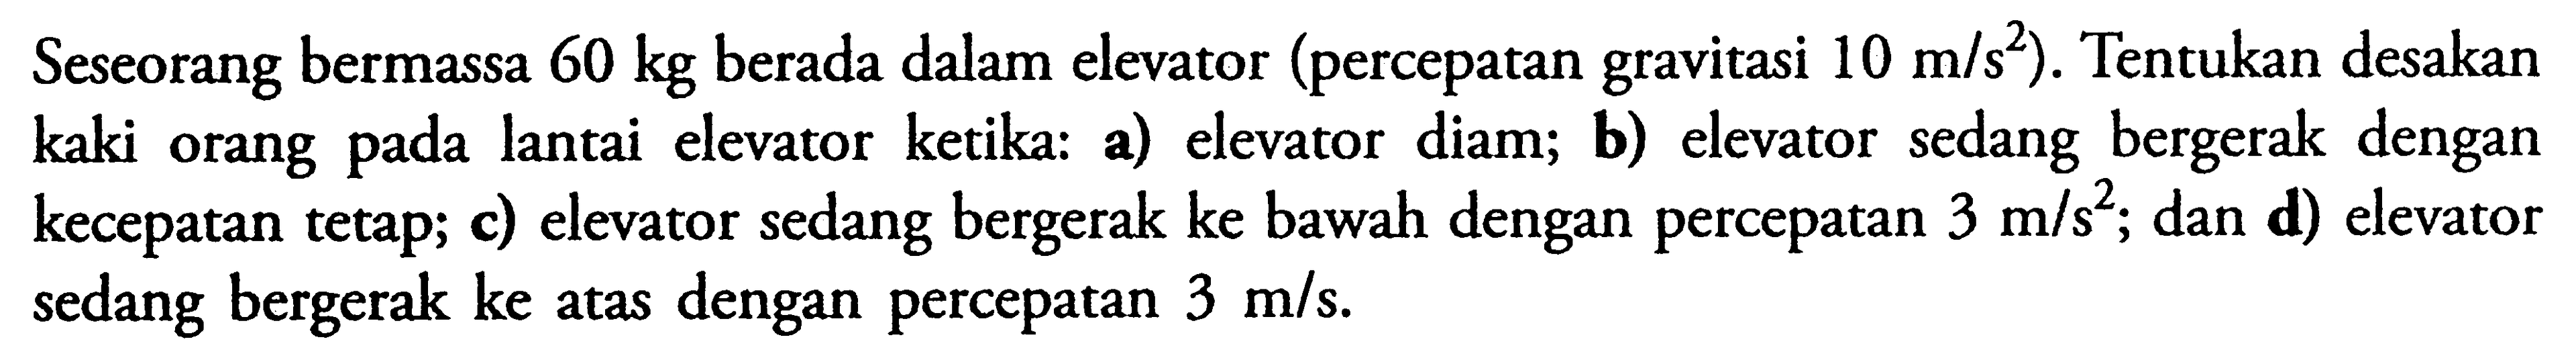 Seseorang bermassa 60 kg berada dalam elevator (percepatan gravitasi 10 m/s^2). Tentukan desakan kaki orang pada lantai elevator ketika: a) elevator diam; b) elevator sedang bergerak dengan kecepatan tetap; c) elevator sedang bergerak ke bawah dengan percepatan 3 m/s^2; dan d) elevator sedang bergerak ke atas dengan percepatan 3 m/s.